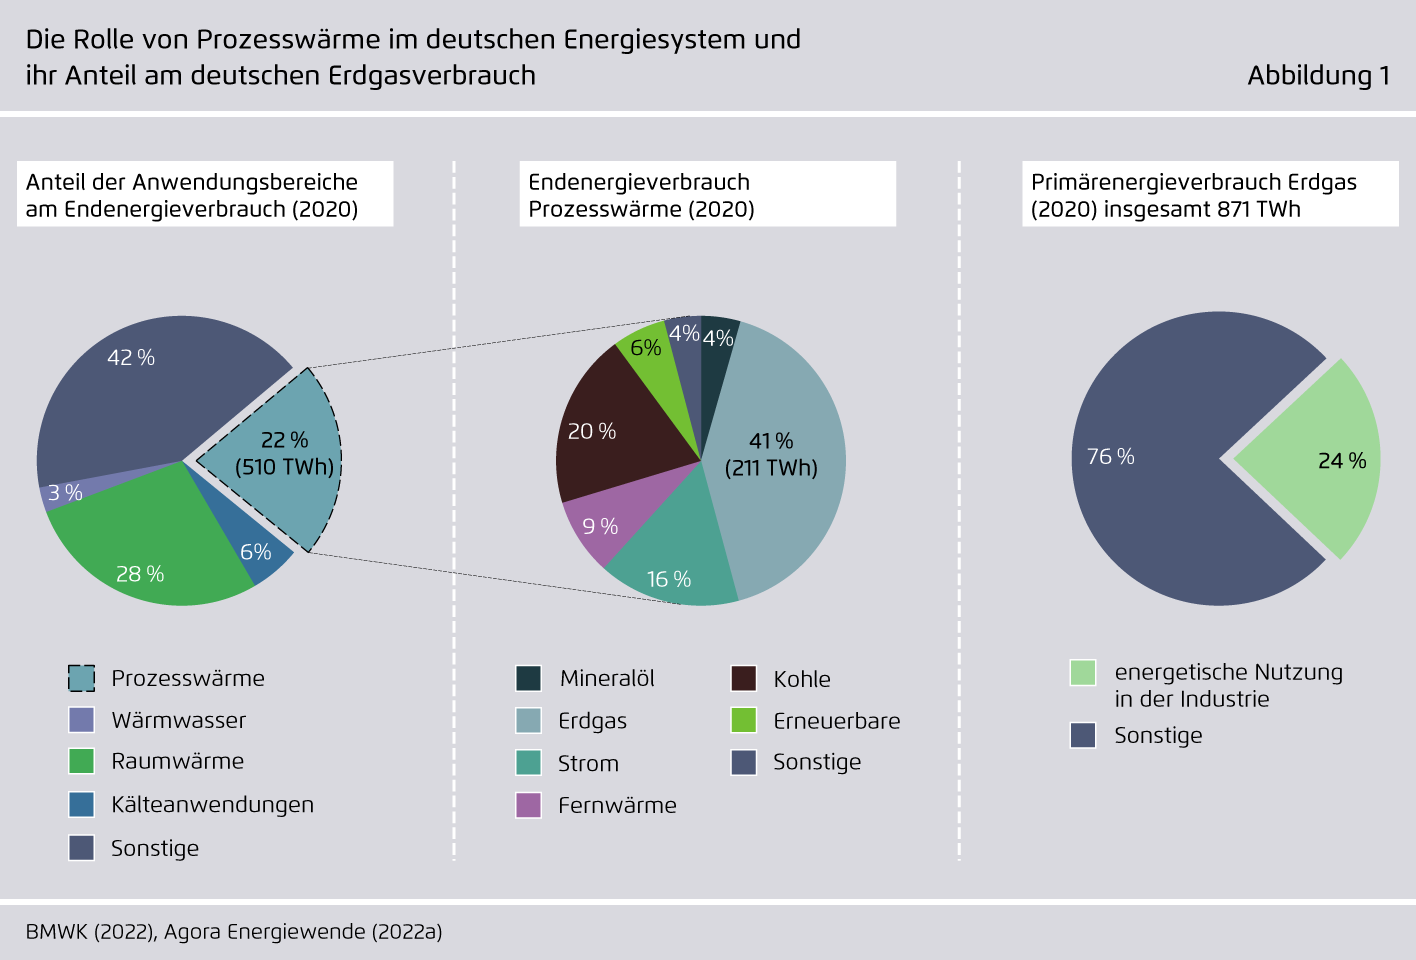 Preview for Die Rolle von Prozesswärme im deutschen Energiesystem und ihr Anteil am deutschen Erdgasverbrauch